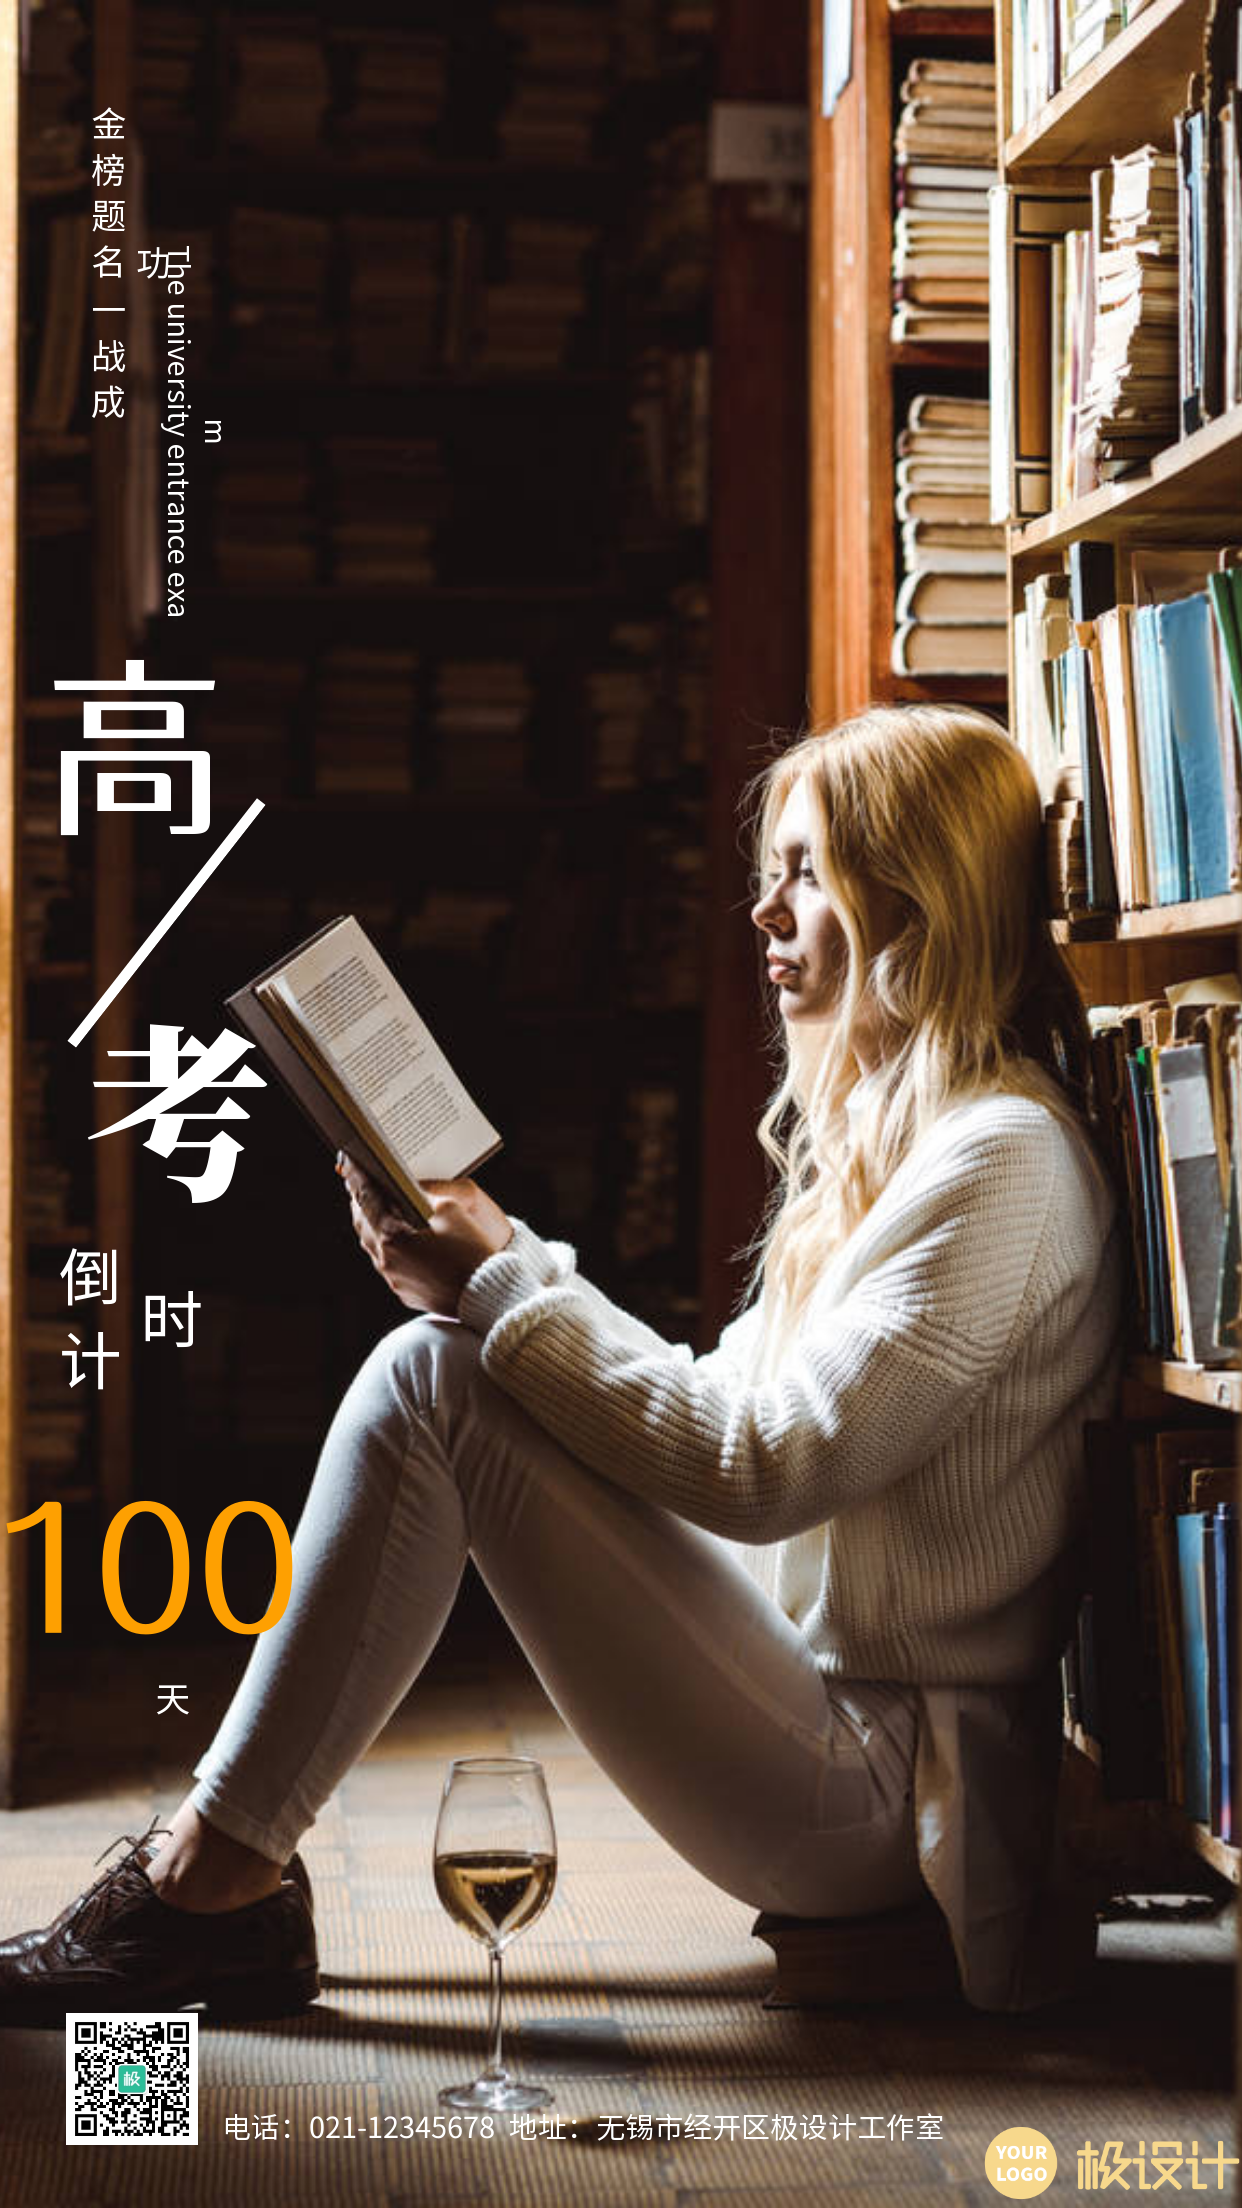 简约女孩图书馆读书高考倒计时摄影图海报